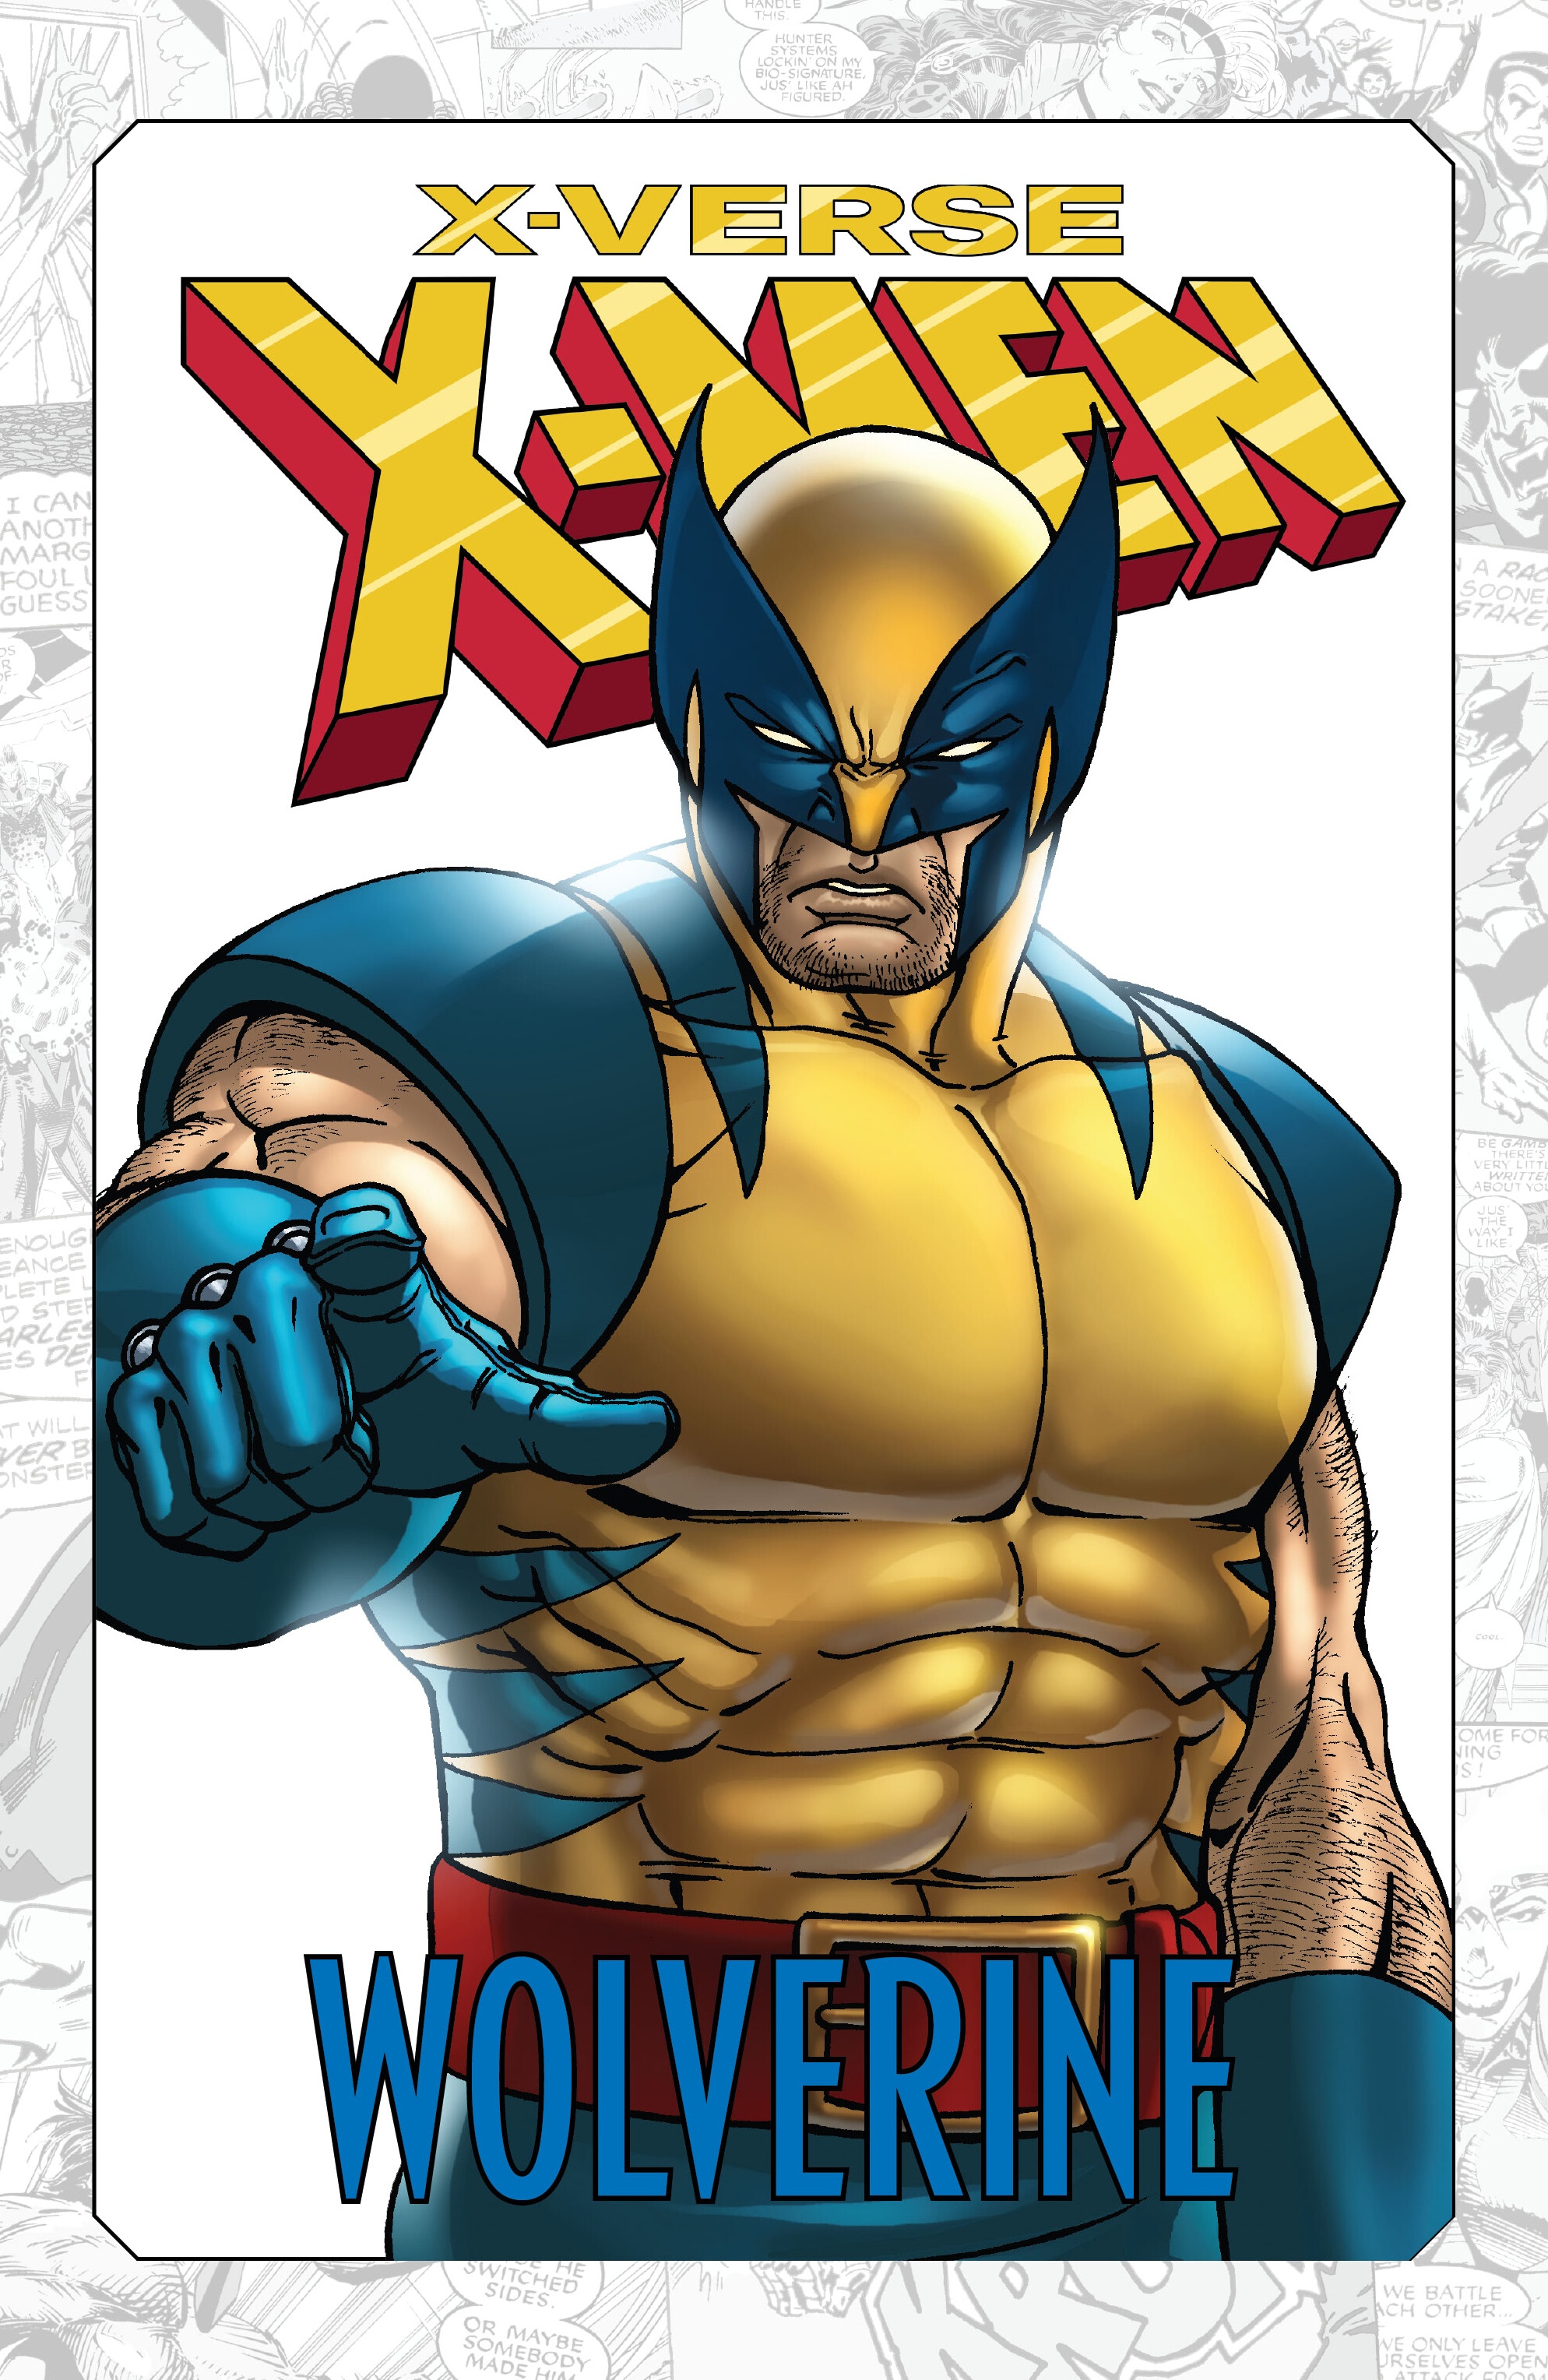 Read online X-Men: X-Verse comic -  Issue # Wolverine - 2